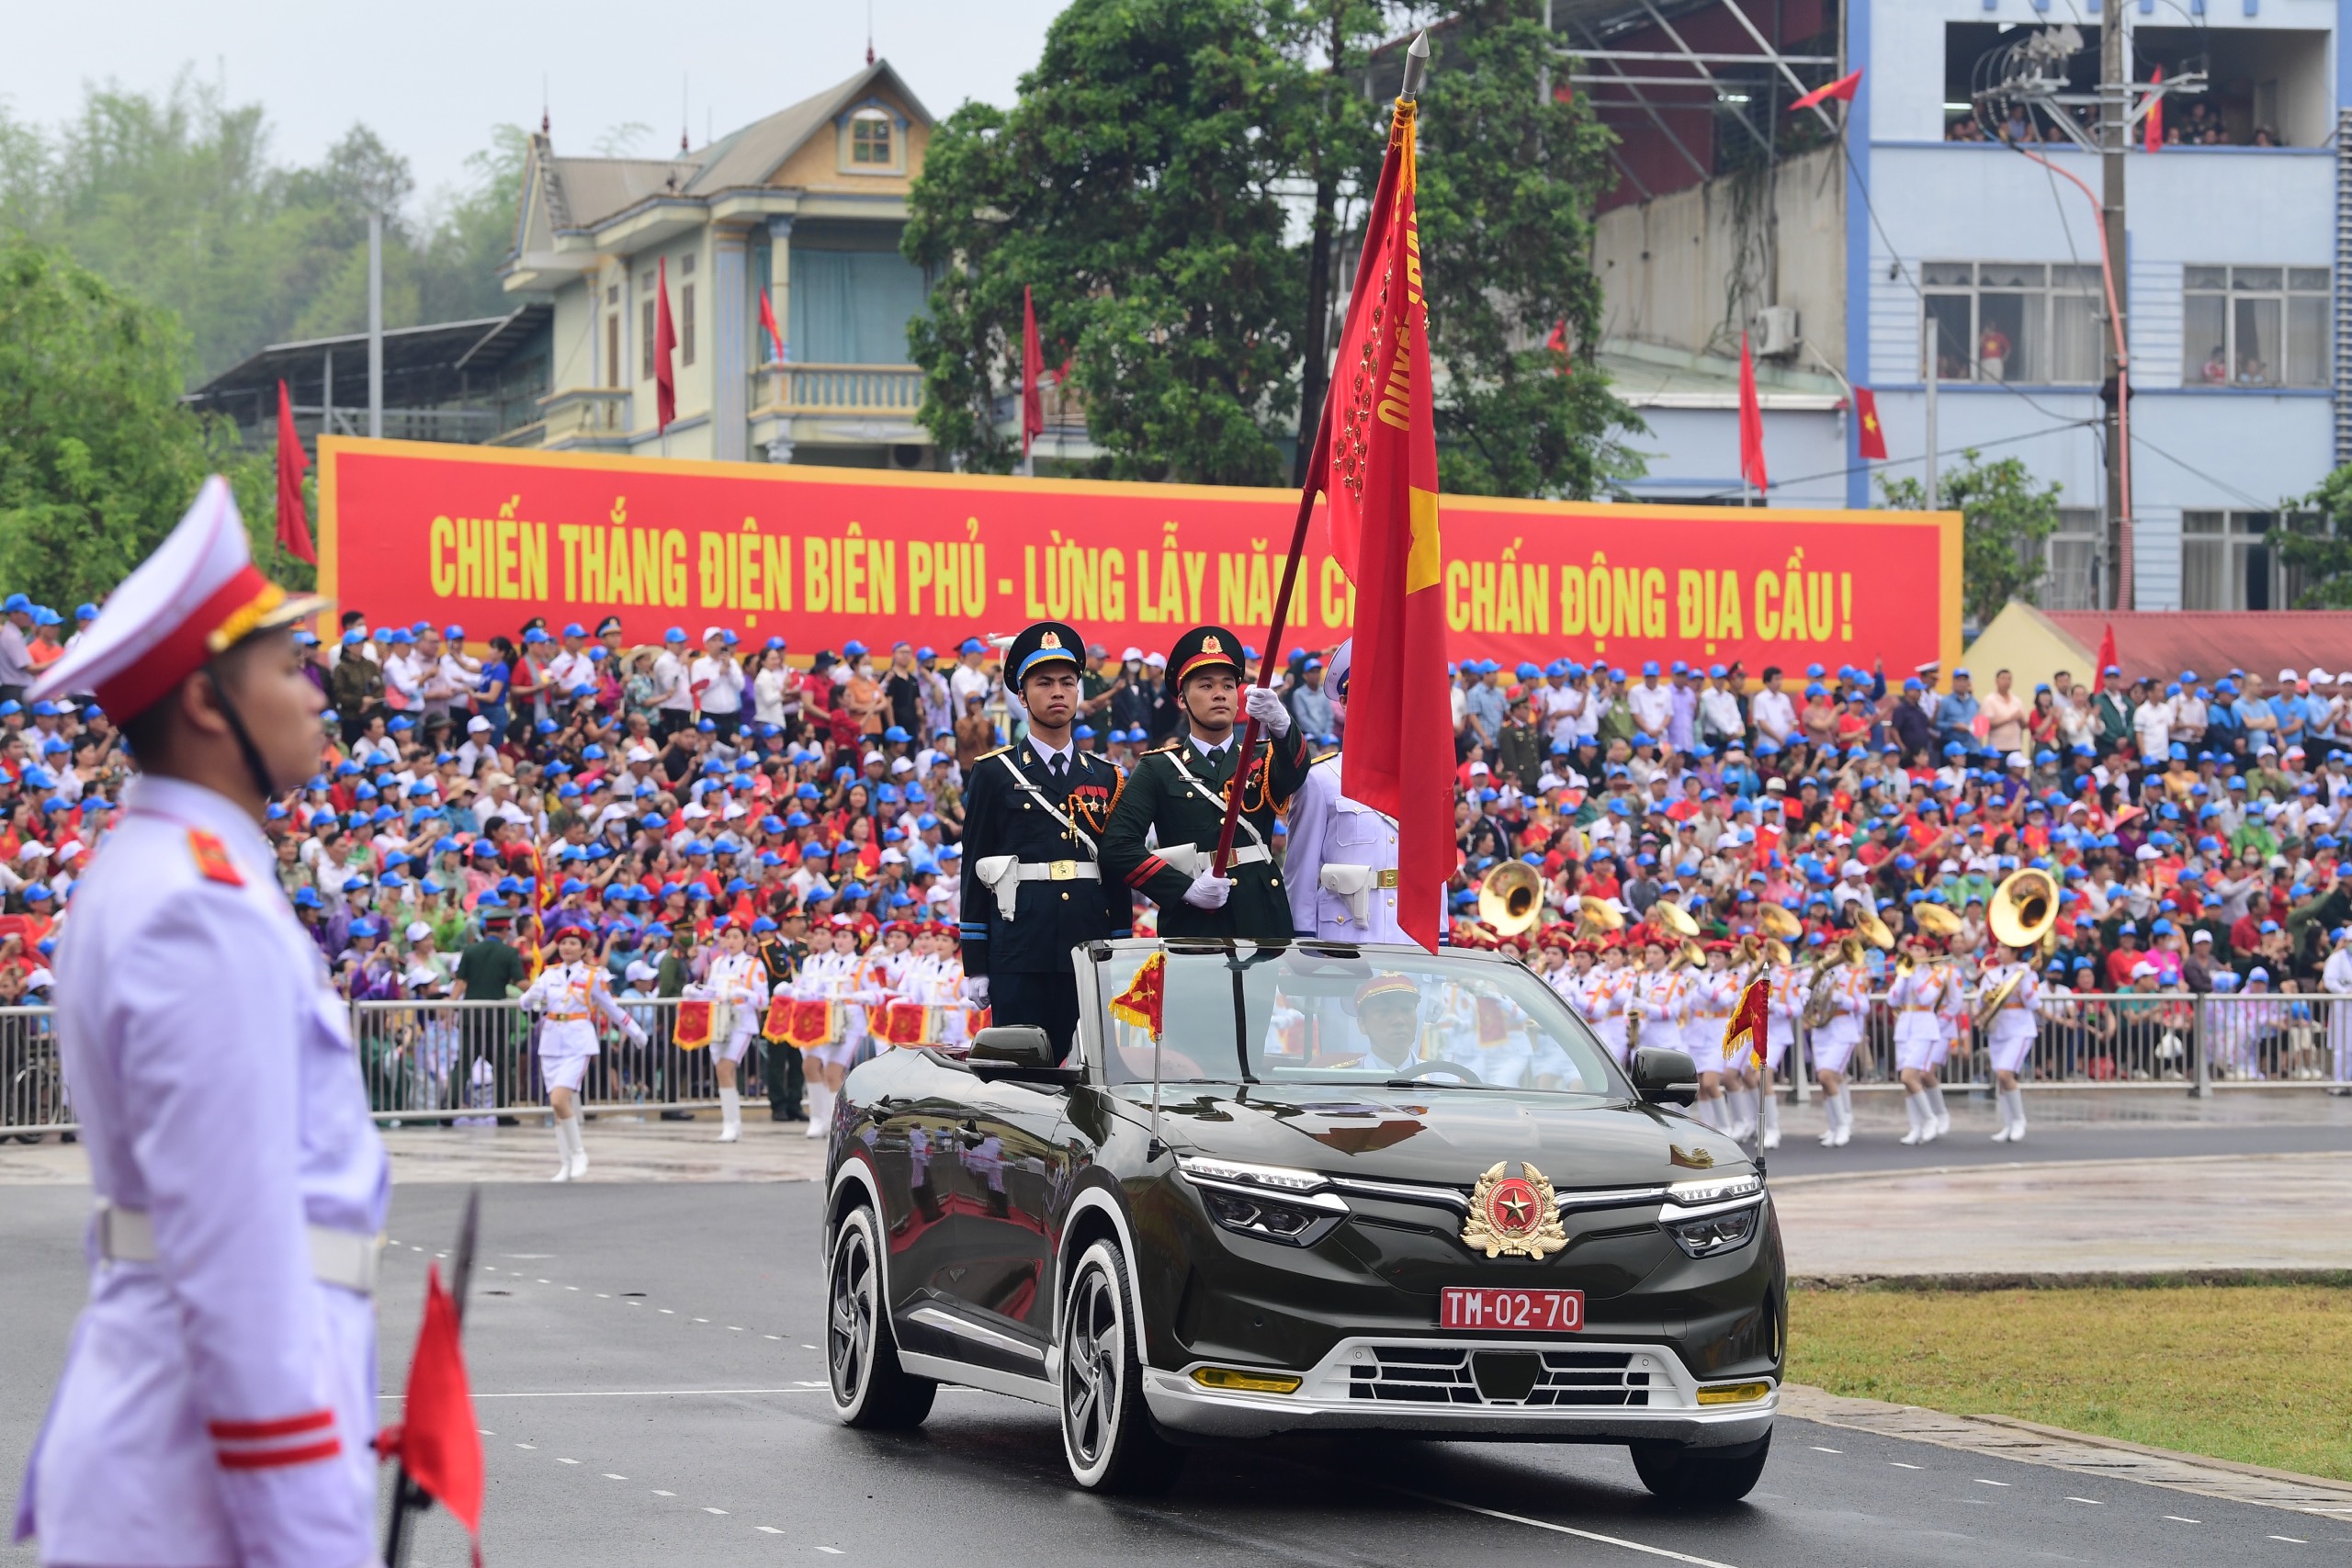 Lễ diễu binh oai hùng và đầy tự hào của 12.000 người - những hình ảnh đi vào lịch sử ở Điện Biên Phủ- Ảnh 22.